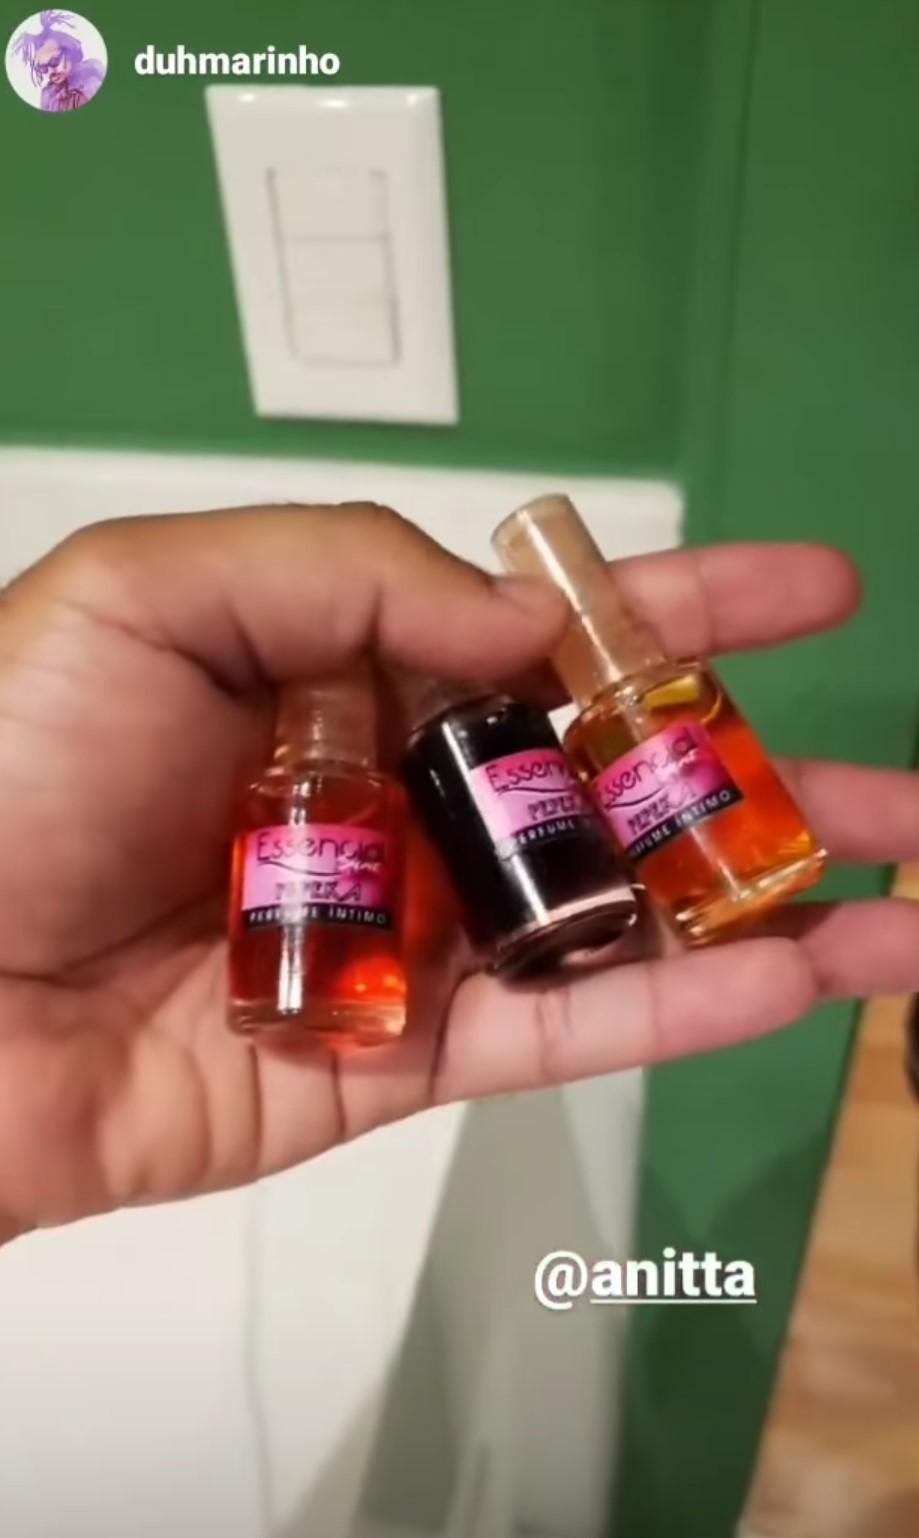 Imagem mostra perfume de região íntima usado por anitta